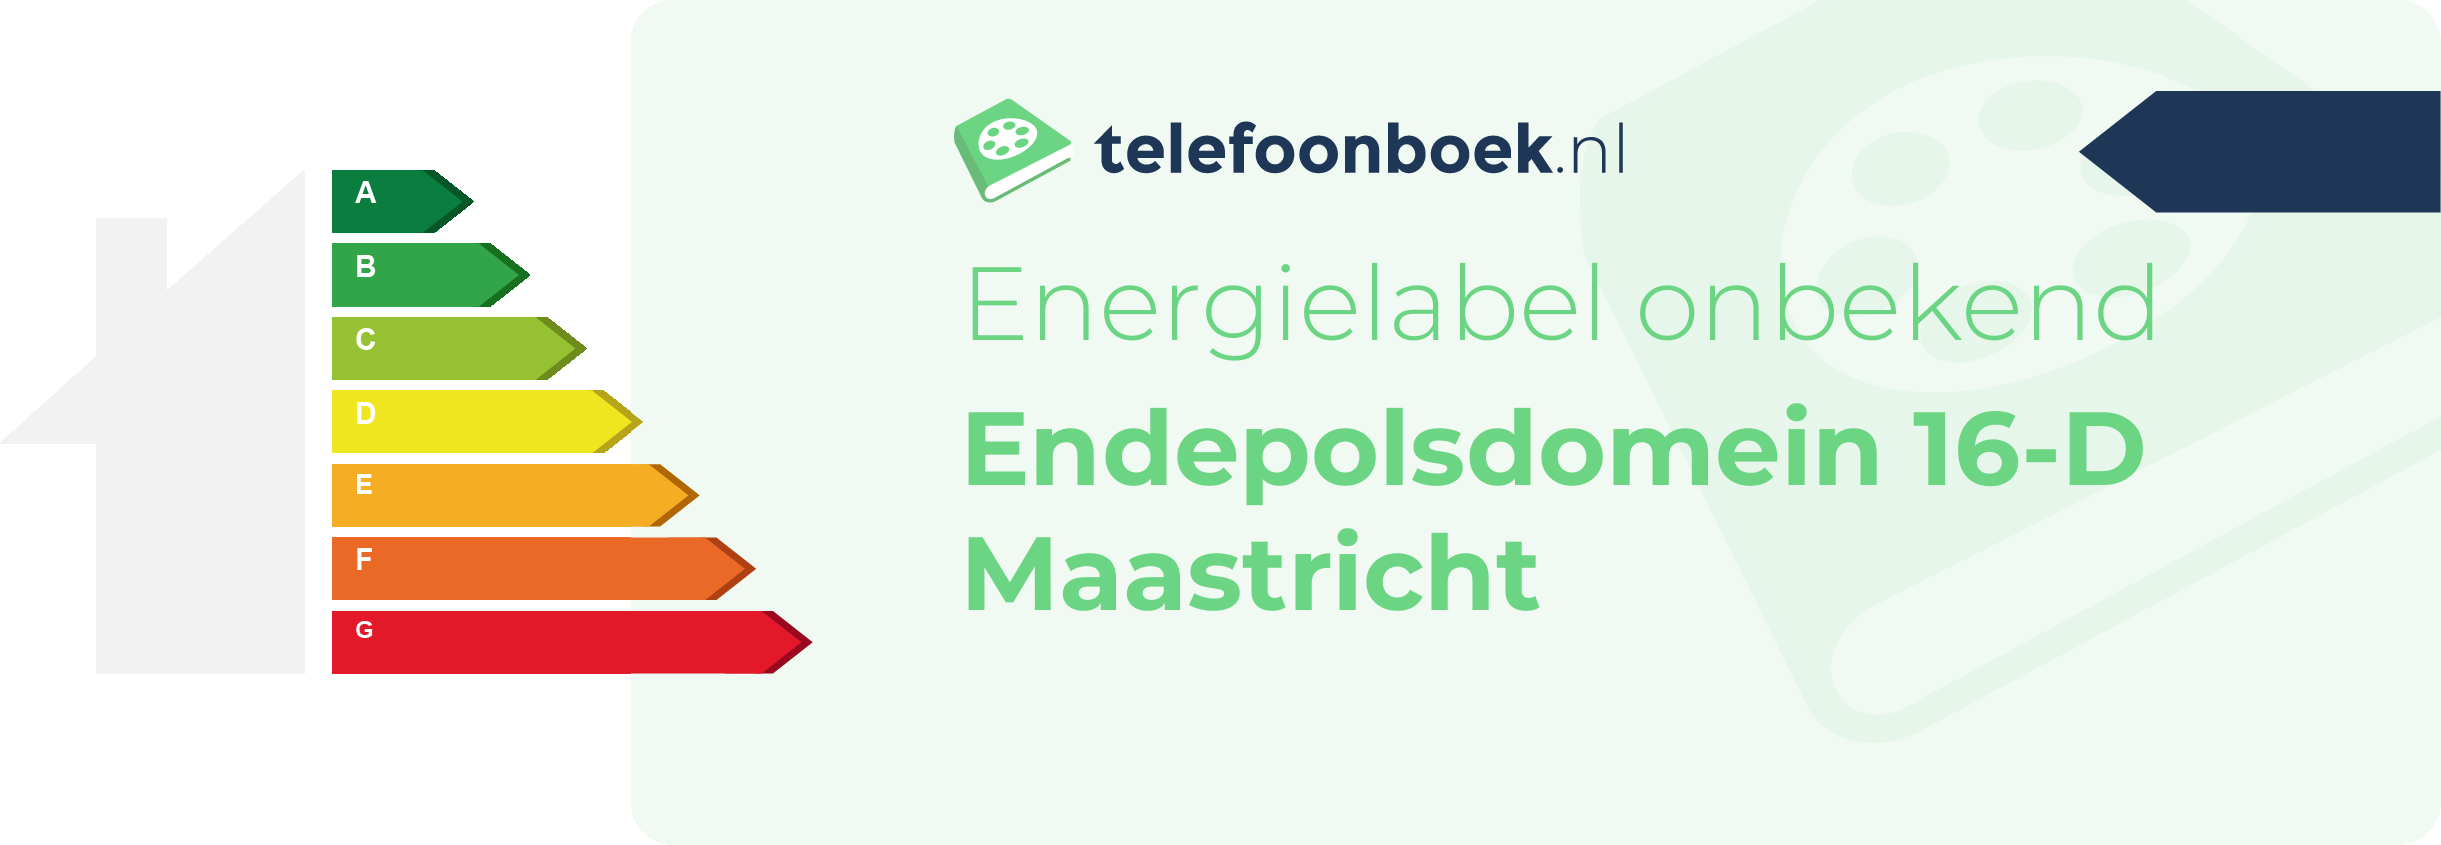 Energielabel Endepolsdomein 16-D Maastricht